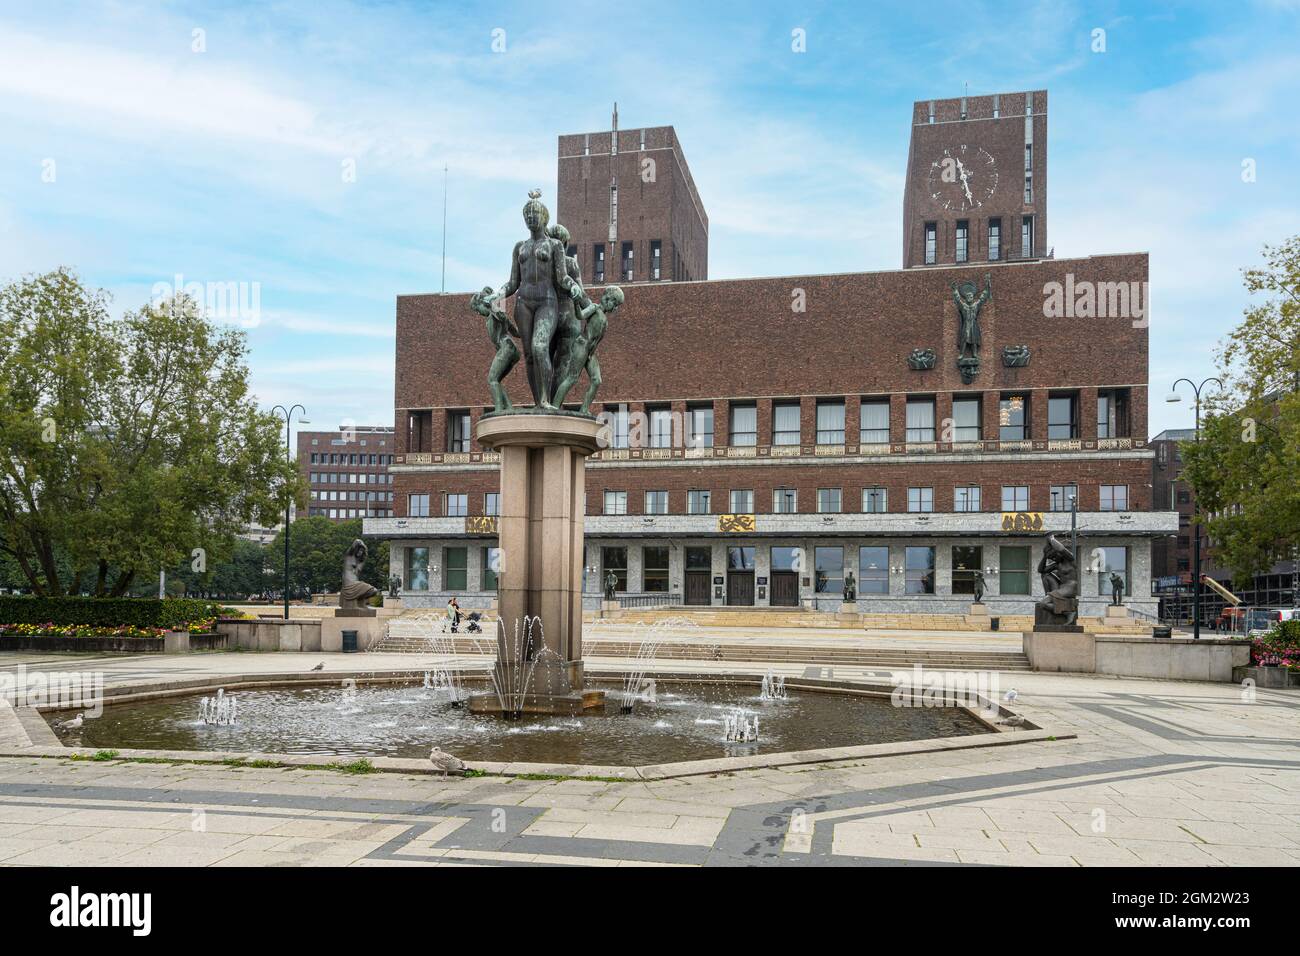 Oslo, Norwegen. September 2021. Außenansicht des Rathausgebäudes im Stadtzentrum. Hier findet die Verleihung des Friedensnobelpreises statt. Stockfoto